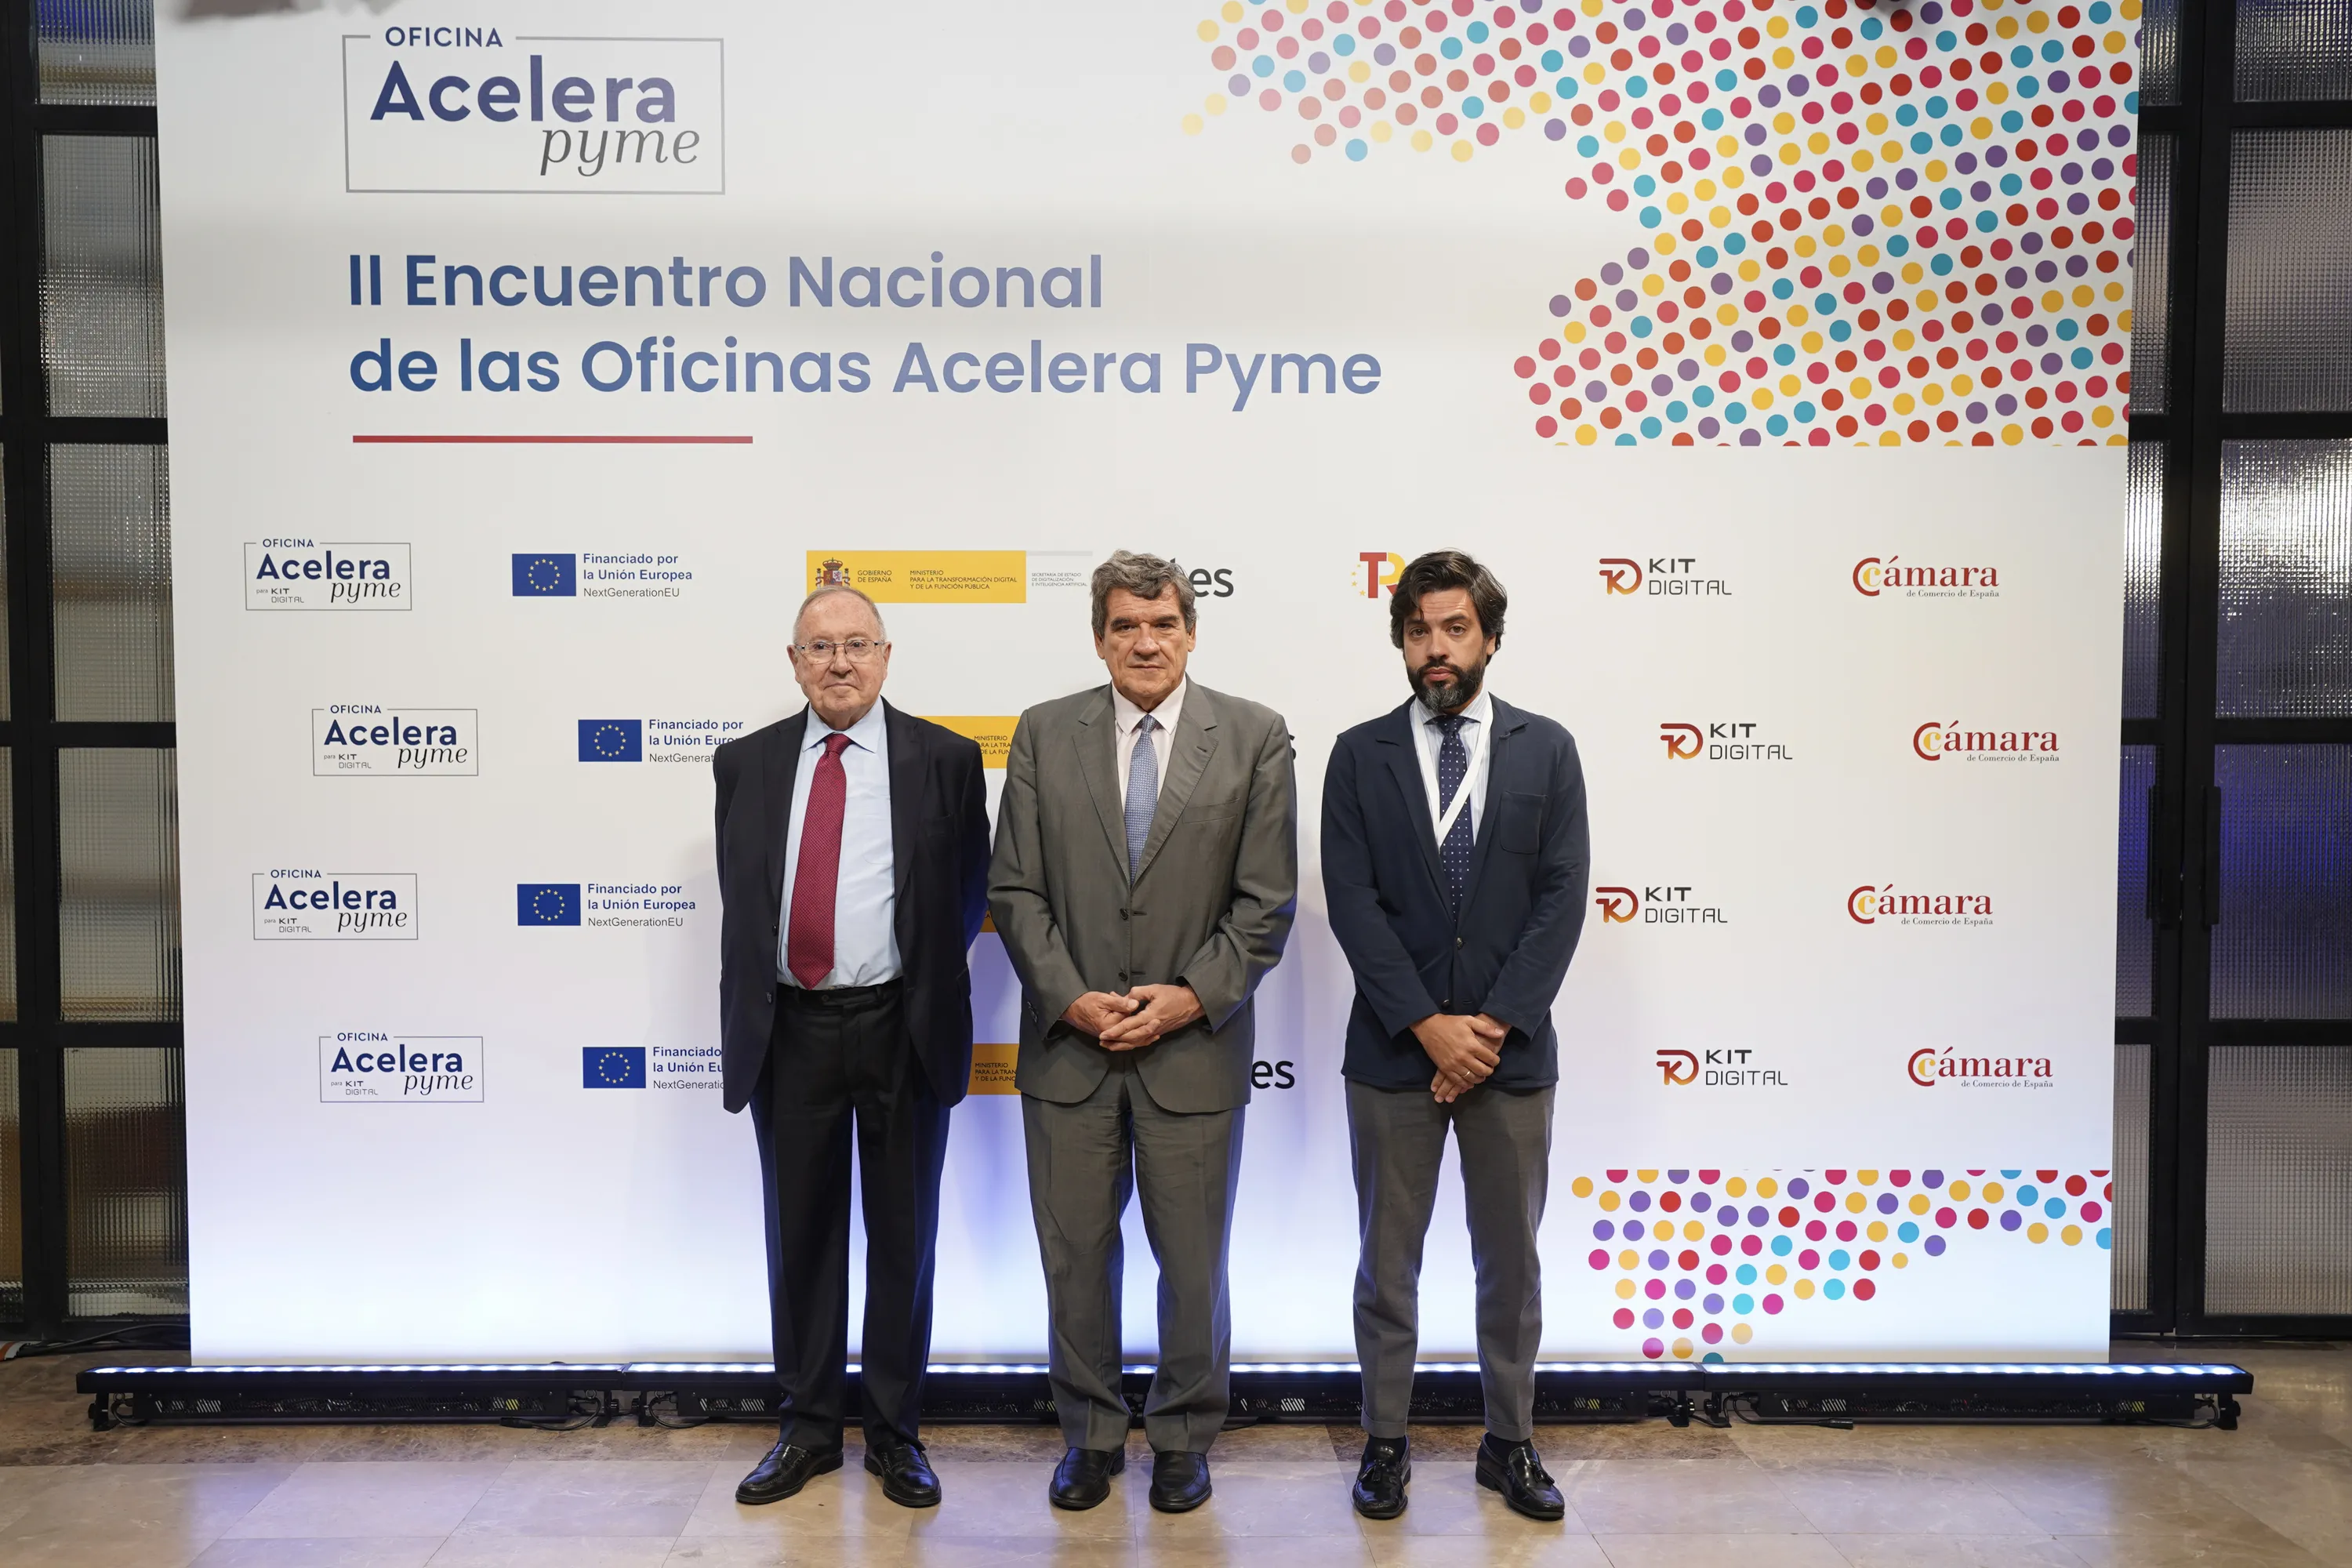 El ministro José Luis Escrivá  pone de relieve el papel clave de las Oficinas Acelera Pyme en el éxito de Kit Digital